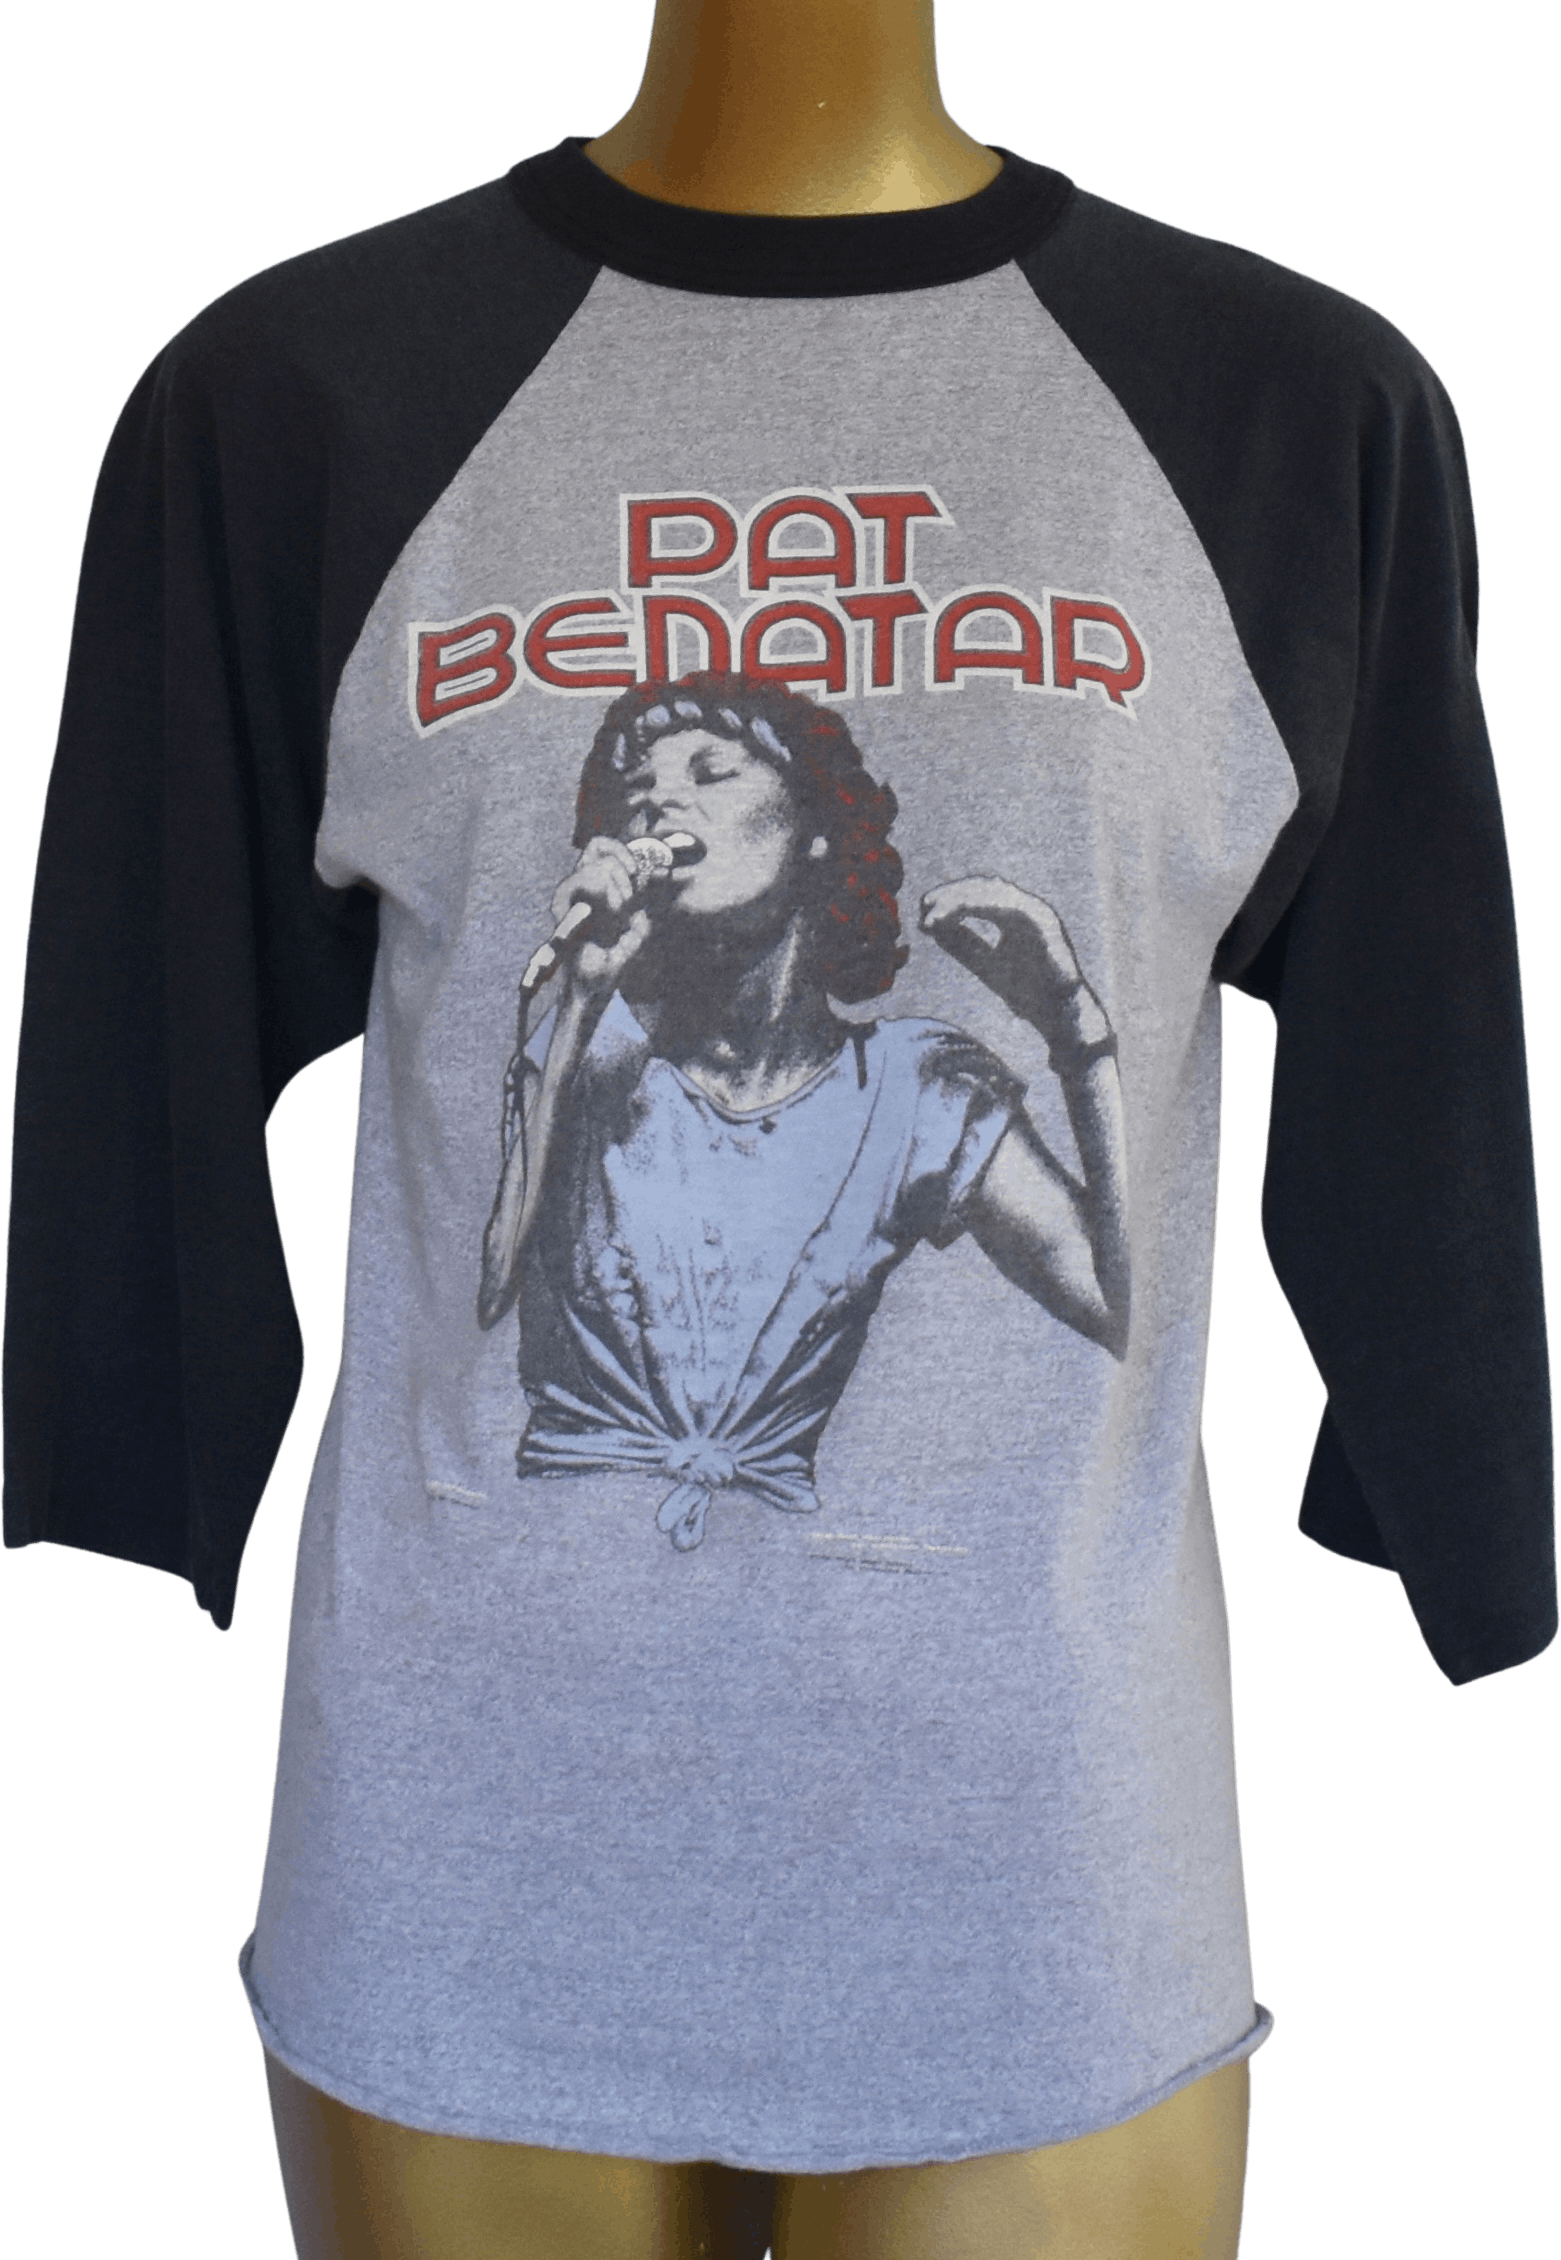 pat benatar tour t shirts